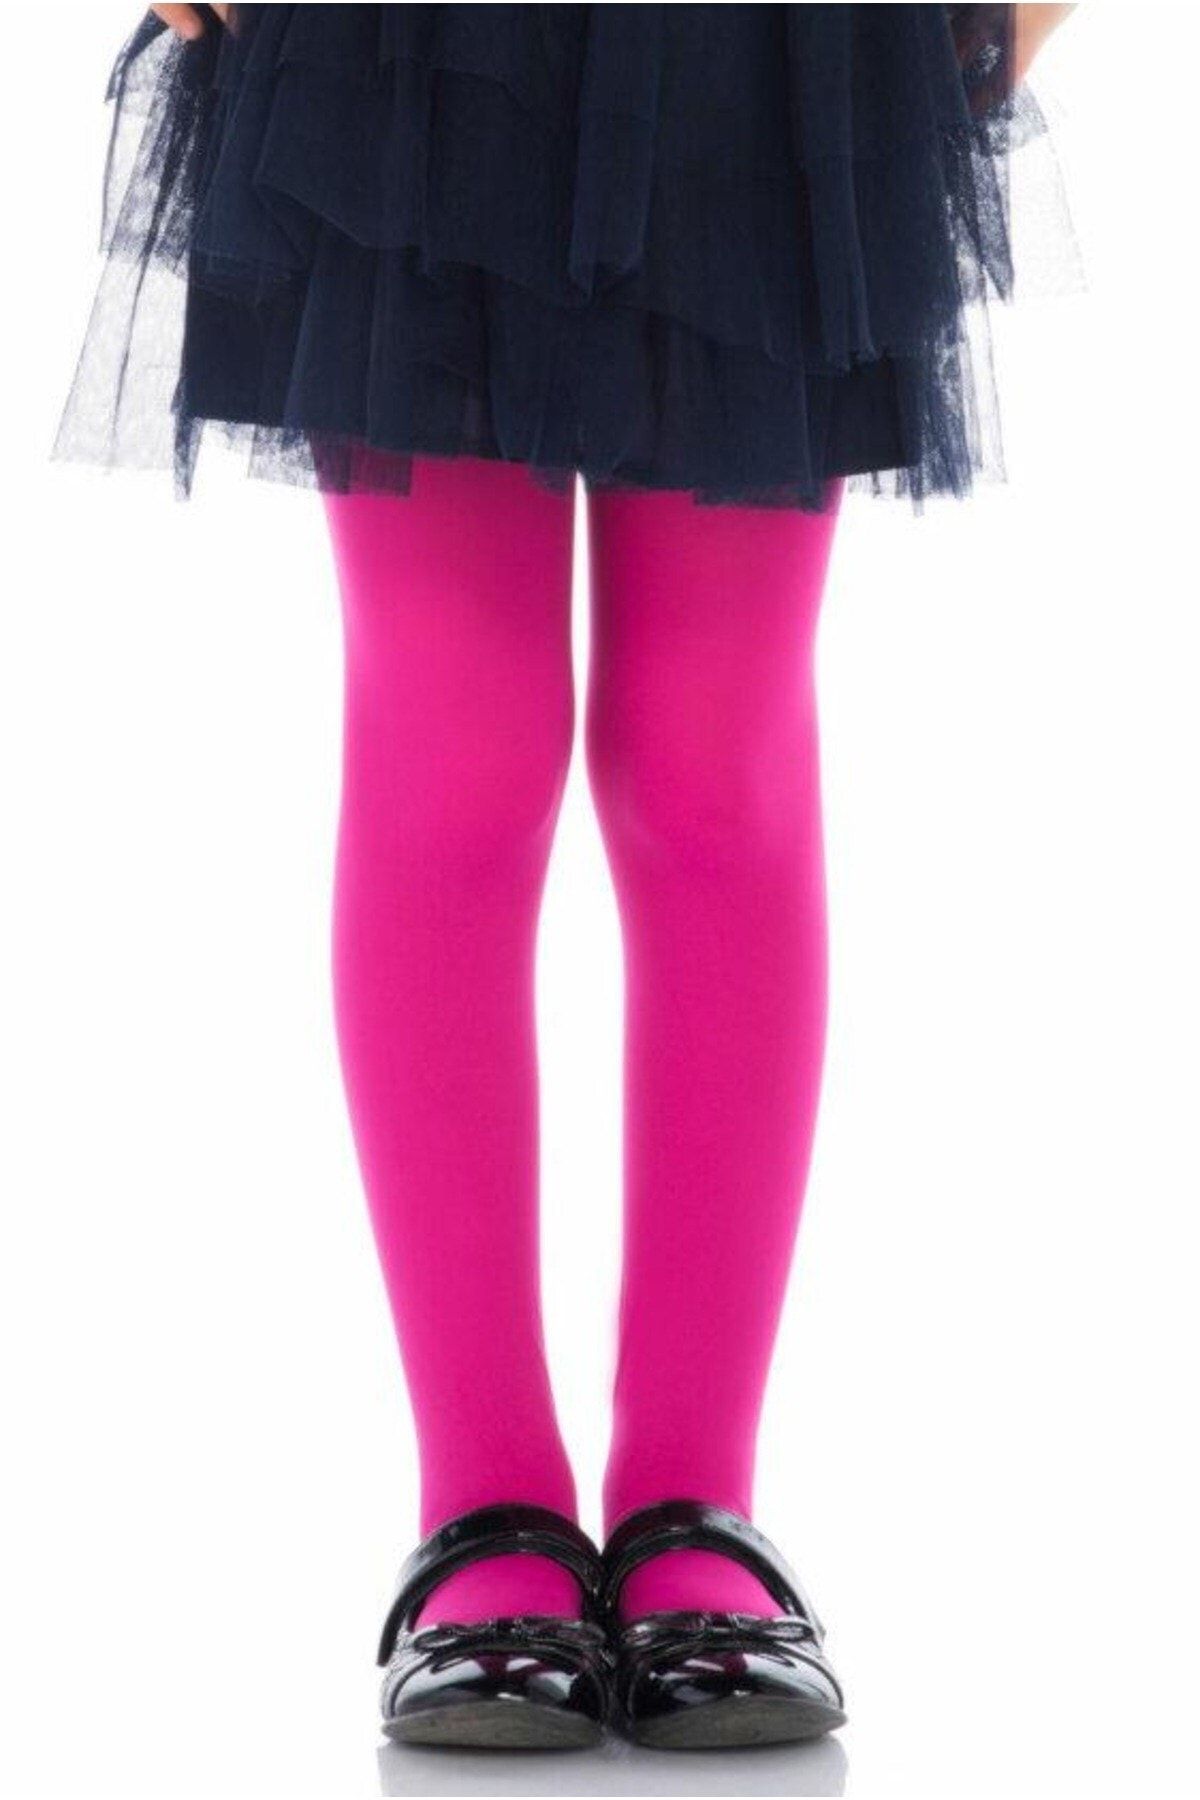 Penti Kız Çocuk Fuşya Mikro 40 Mus Külotlu Çorap